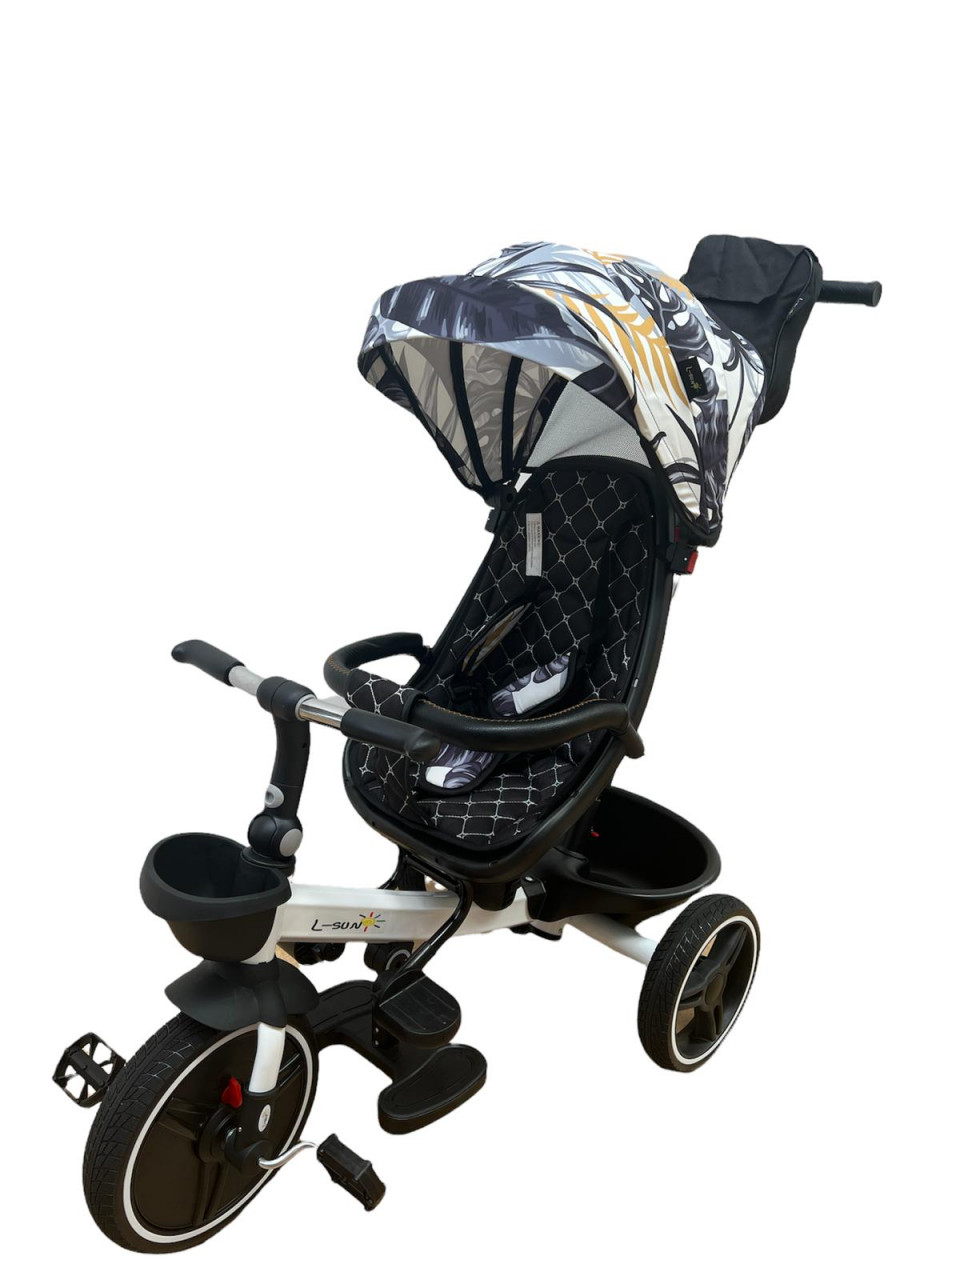 scaun auto copii cu pozitie de somn Tricicleta pliabila cu scaun reversibil si pozitie de somn, Negru cu frunze, TMR-44-frunze